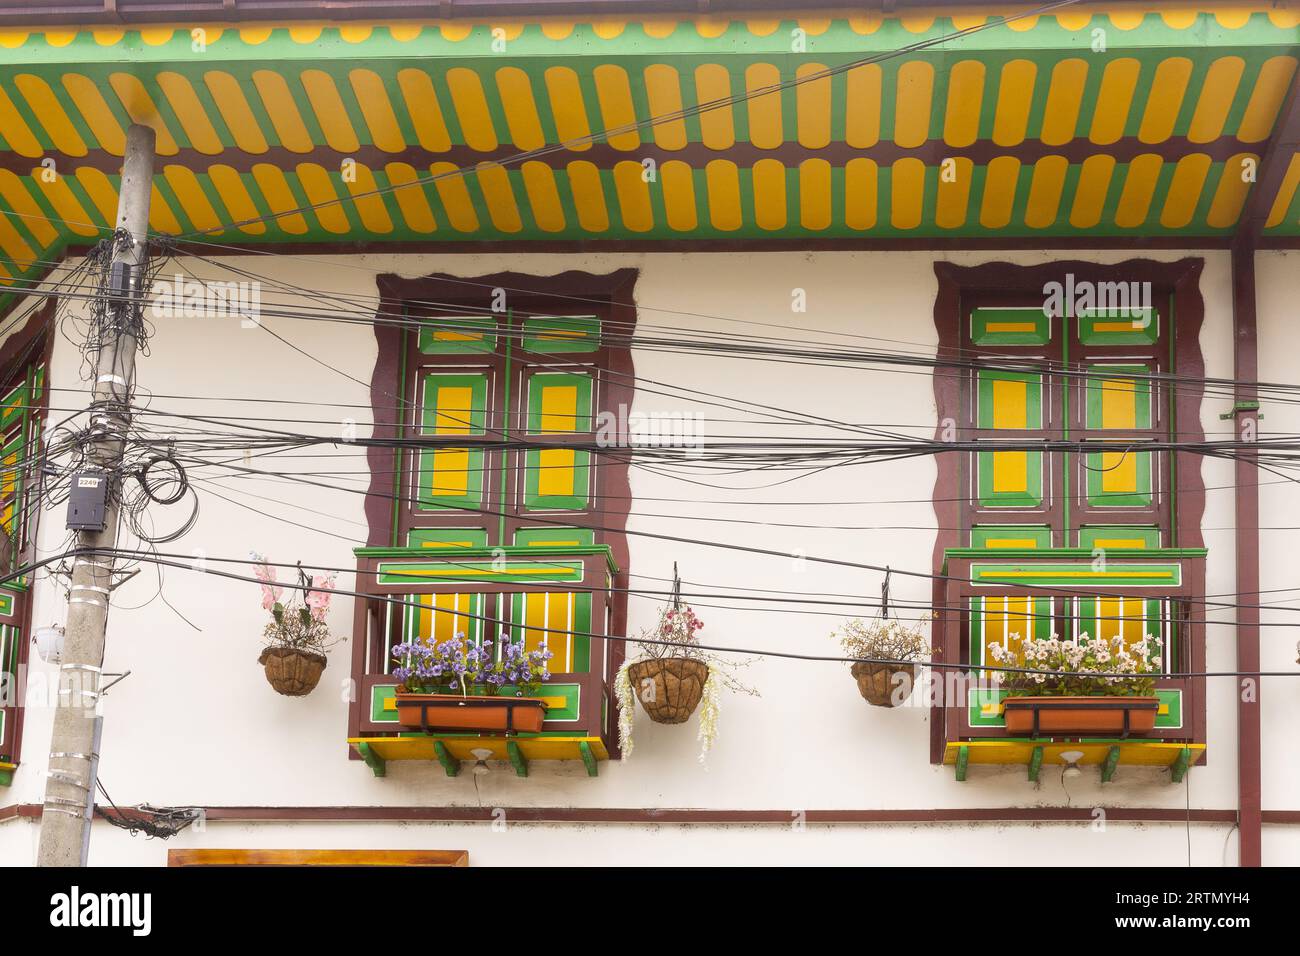 Détail d'un bâtiment colonial coloré à Filandia (Quindio) dans la région du café en Colombie. Banque D'Images